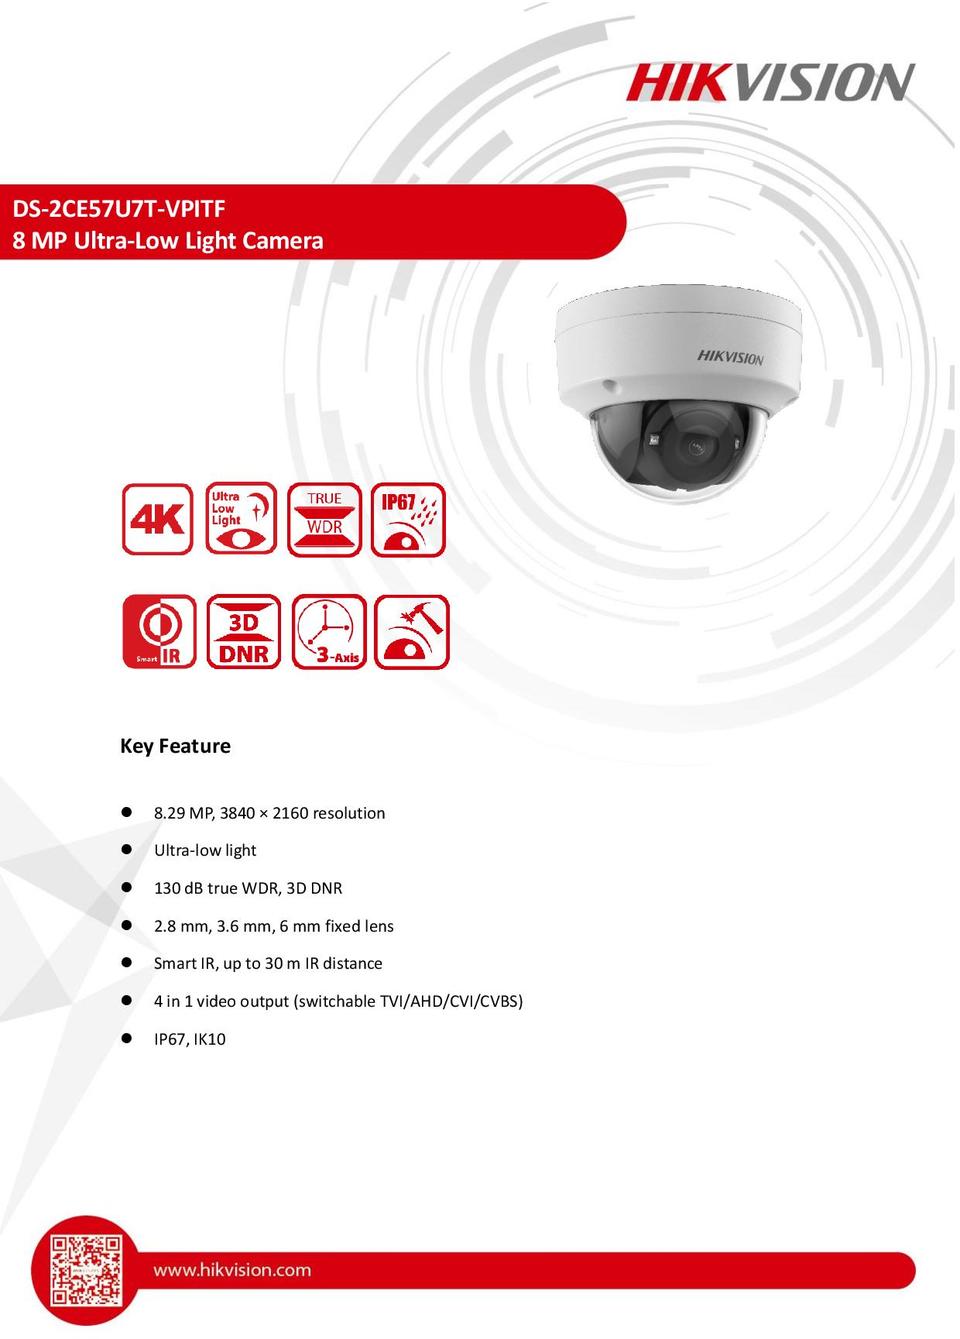 Hikvision DS-2CE57U7T-VPITF 4K 8MP HD-TVI Vandal Dome Camera With IR & 2.8mm Lens 0